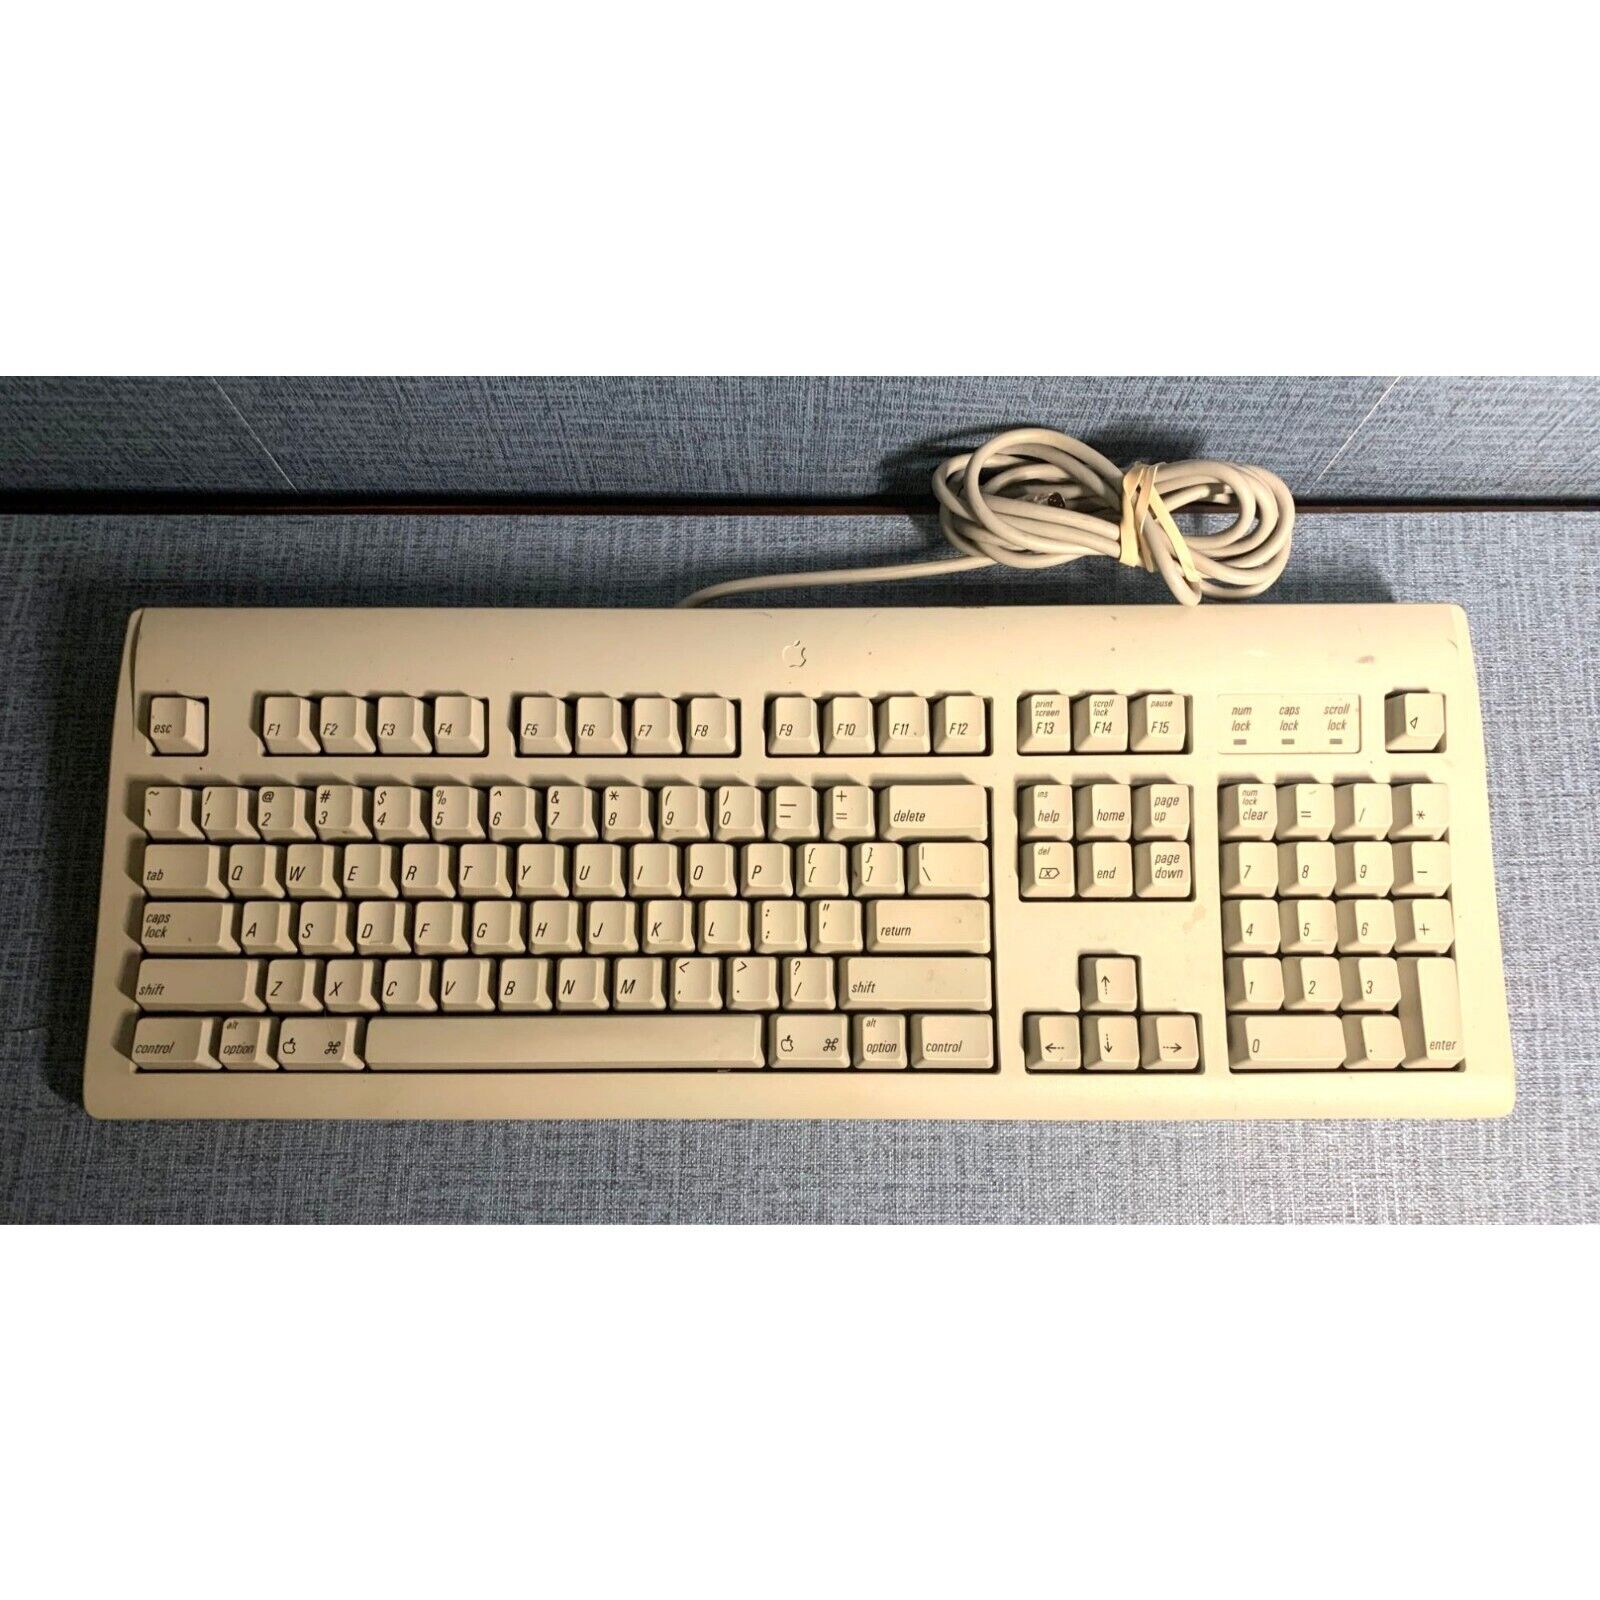 Vintage Apple Design Keyboard Desktop Model #M2980 Made in Thailand 1994